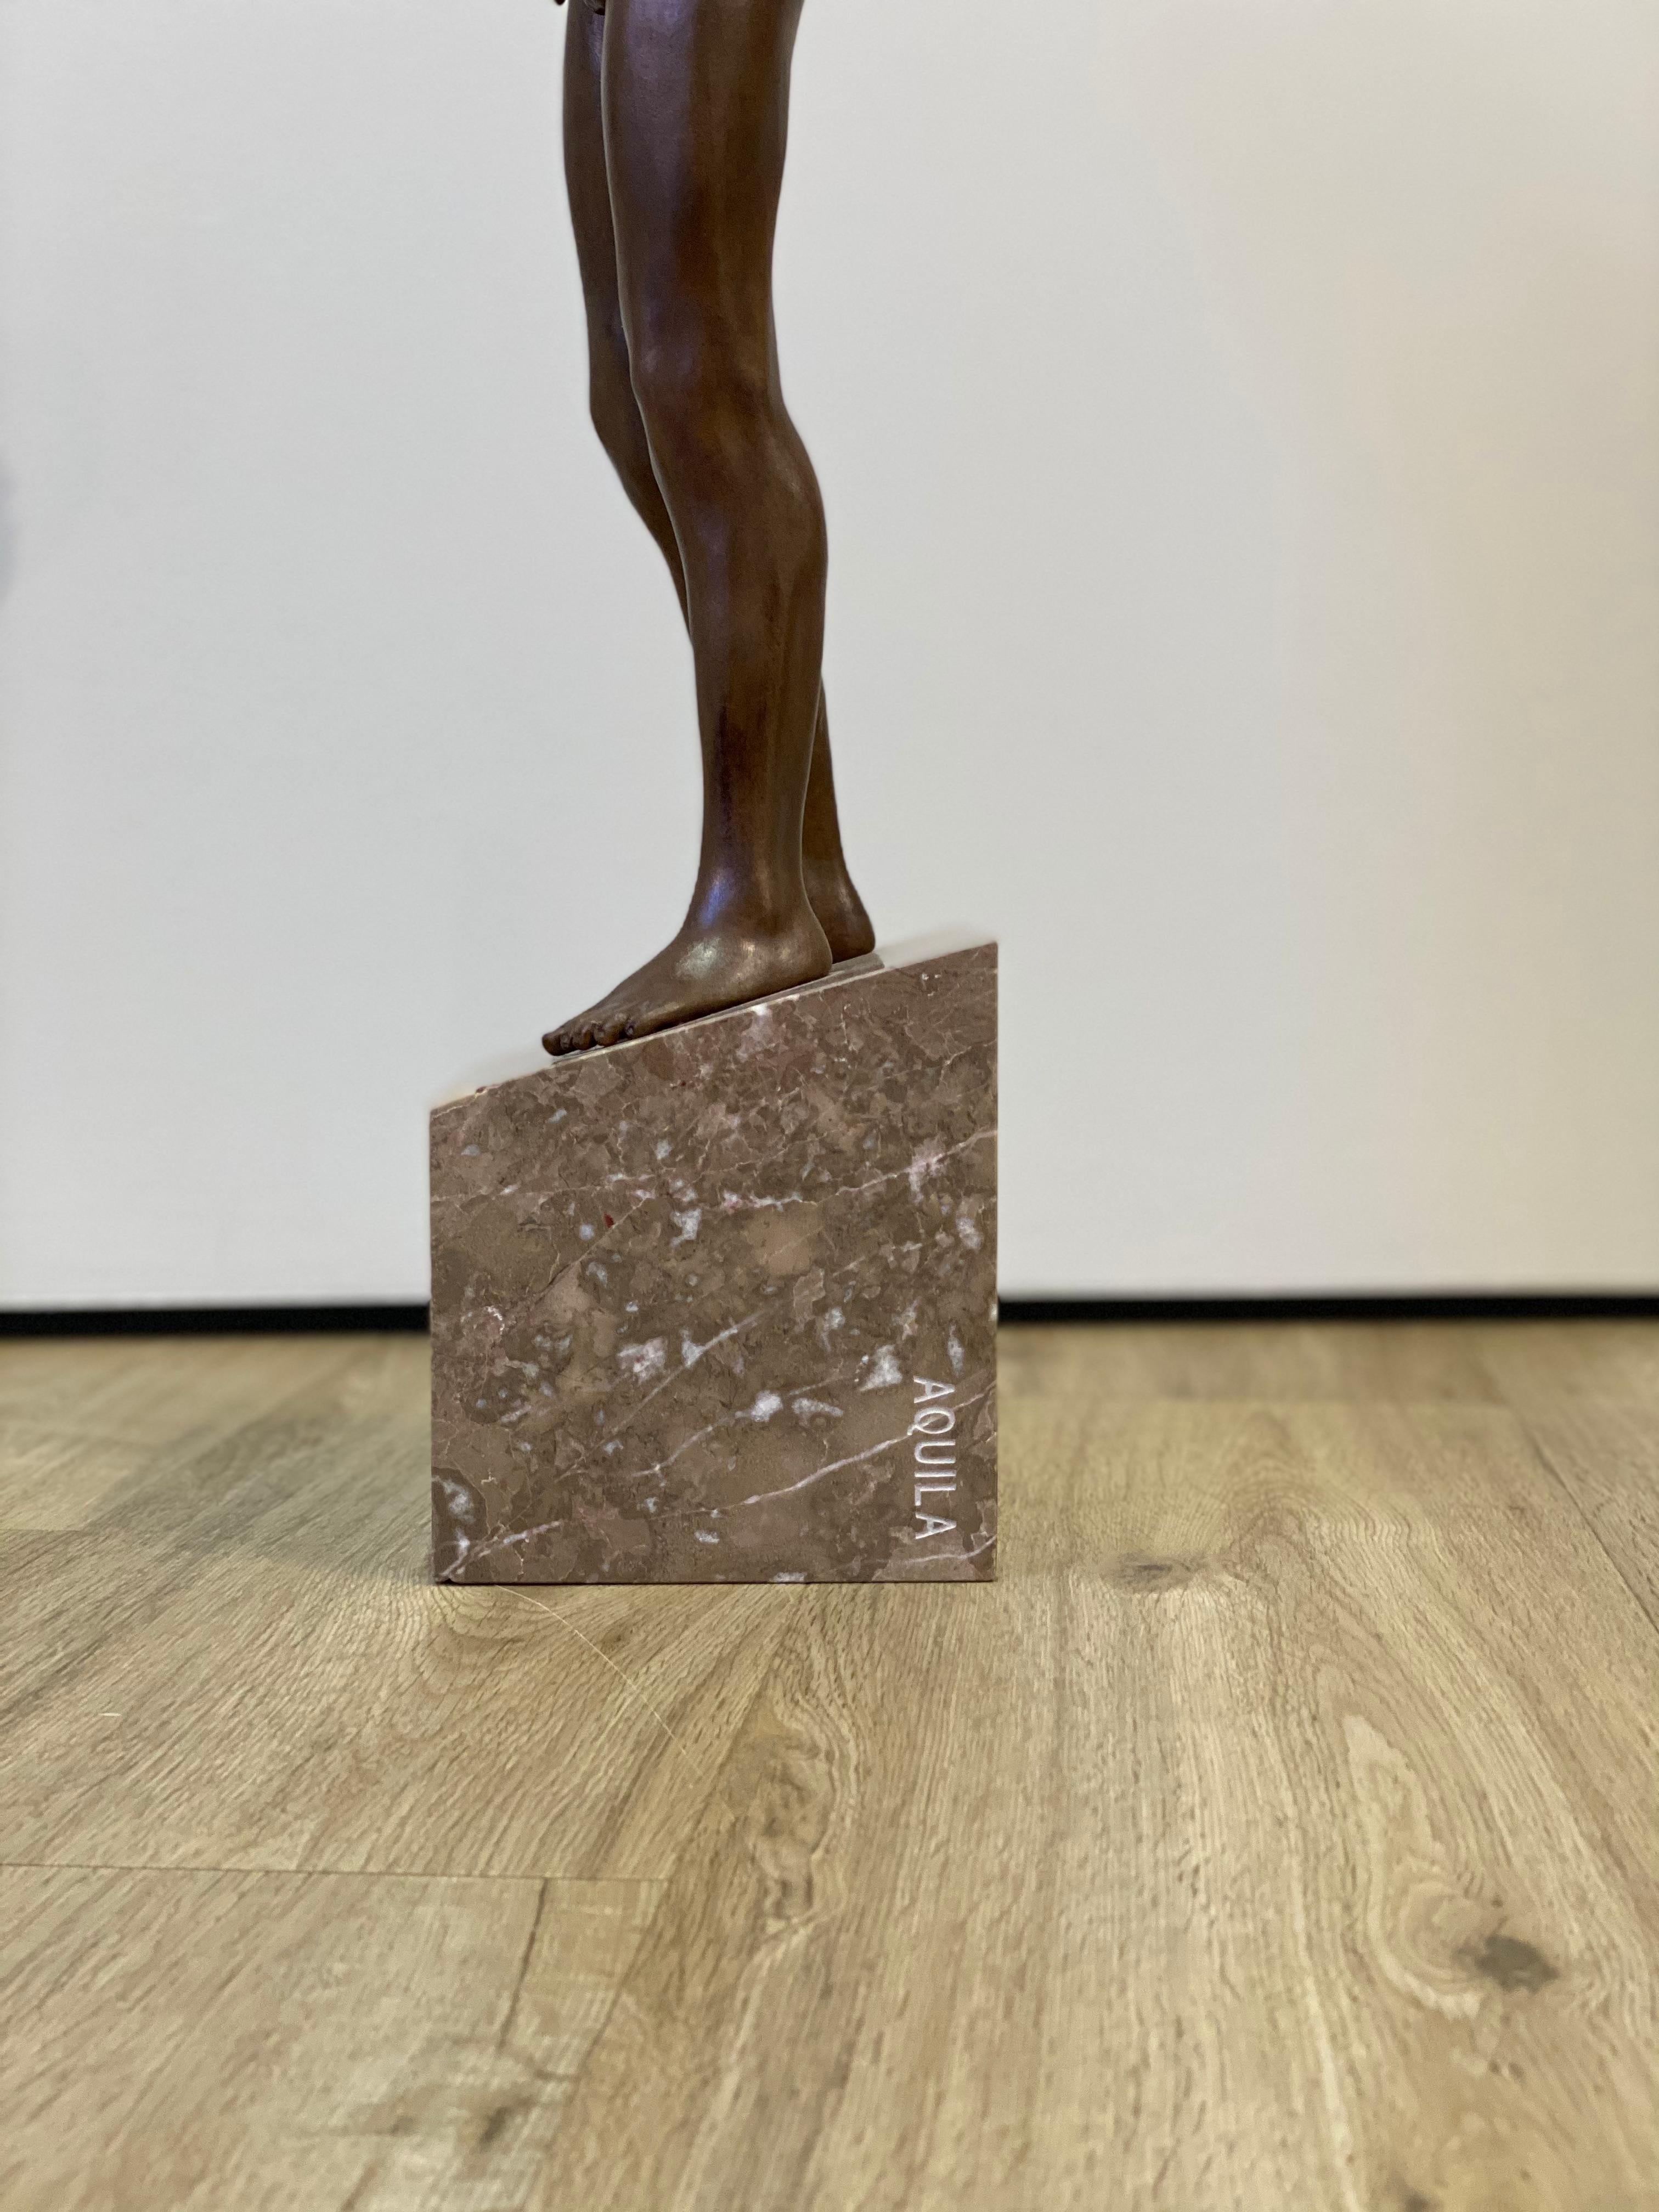 Aquila
Bronzeskulptur auf Sockel aus Marmor
Höhe Bronze 57 cm mit Sockel aus Marmor (enthalten) 68 cm

Die Skulpturen von Wim van der Kant sind aus Bronze. 

Der niederländische Künstler Wim van der Kant macht alles im Prozess selbst. Infolgedessen